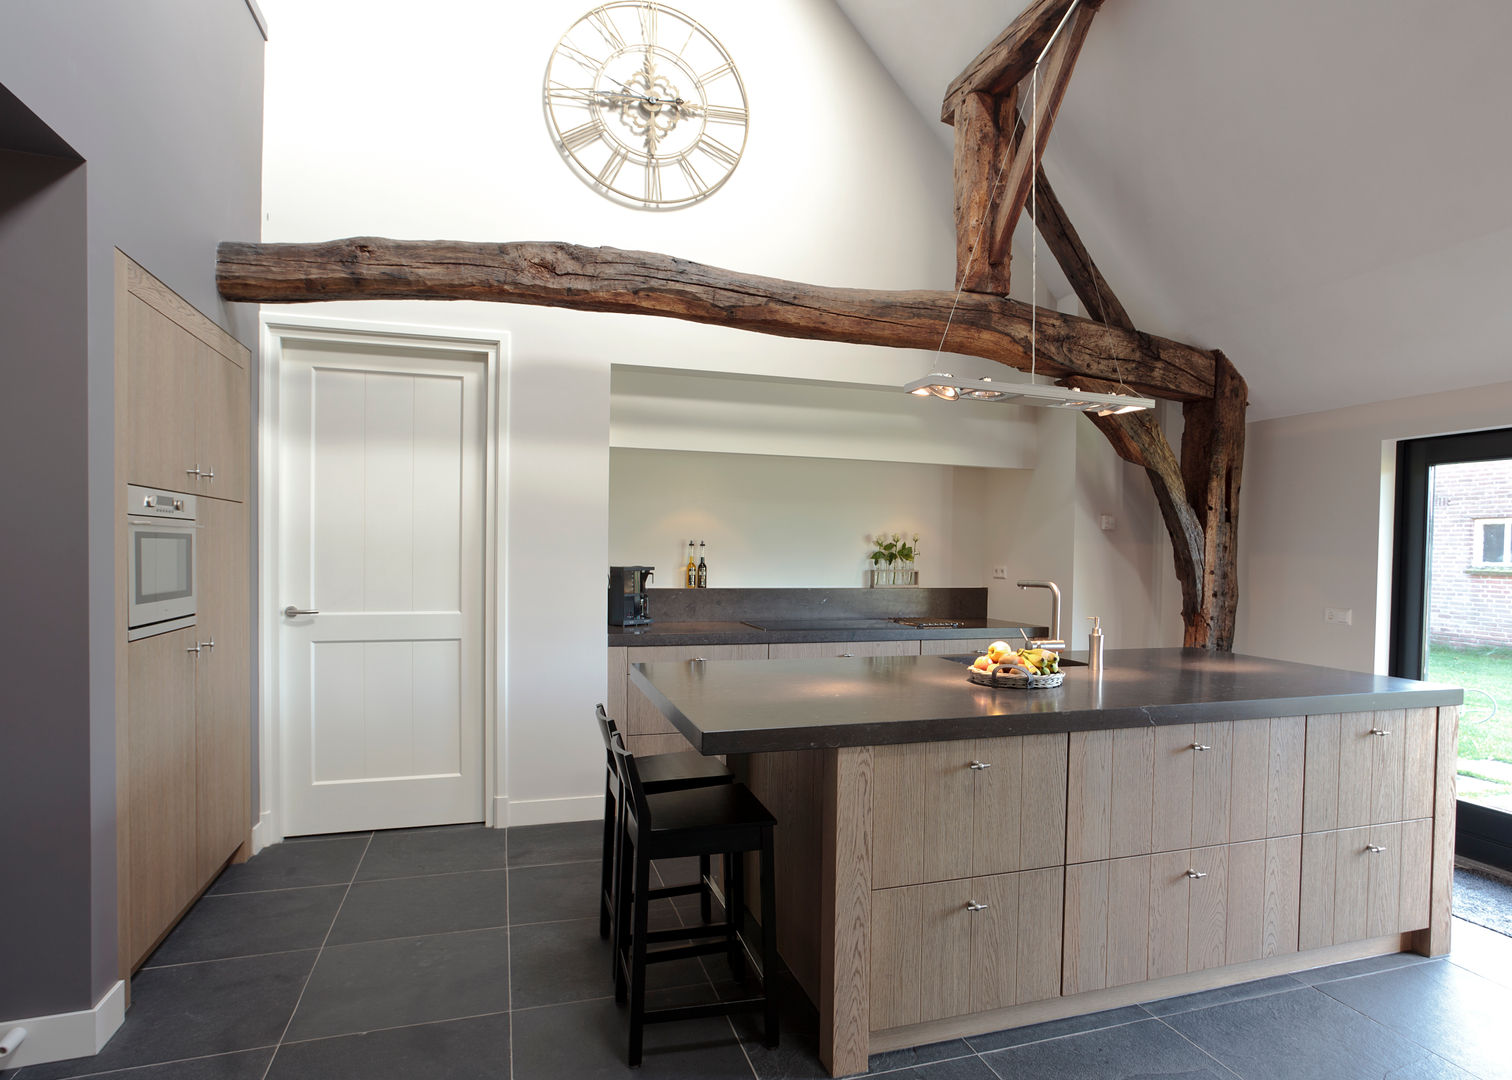 Open keuken, ruimte, licht - een keukeneiland biedt alle mogelijkhede, Thijs van de Wouw keuken- en interieurbouw Thijs van de Wouw keuken- en interieurbouw Classic style kitchen